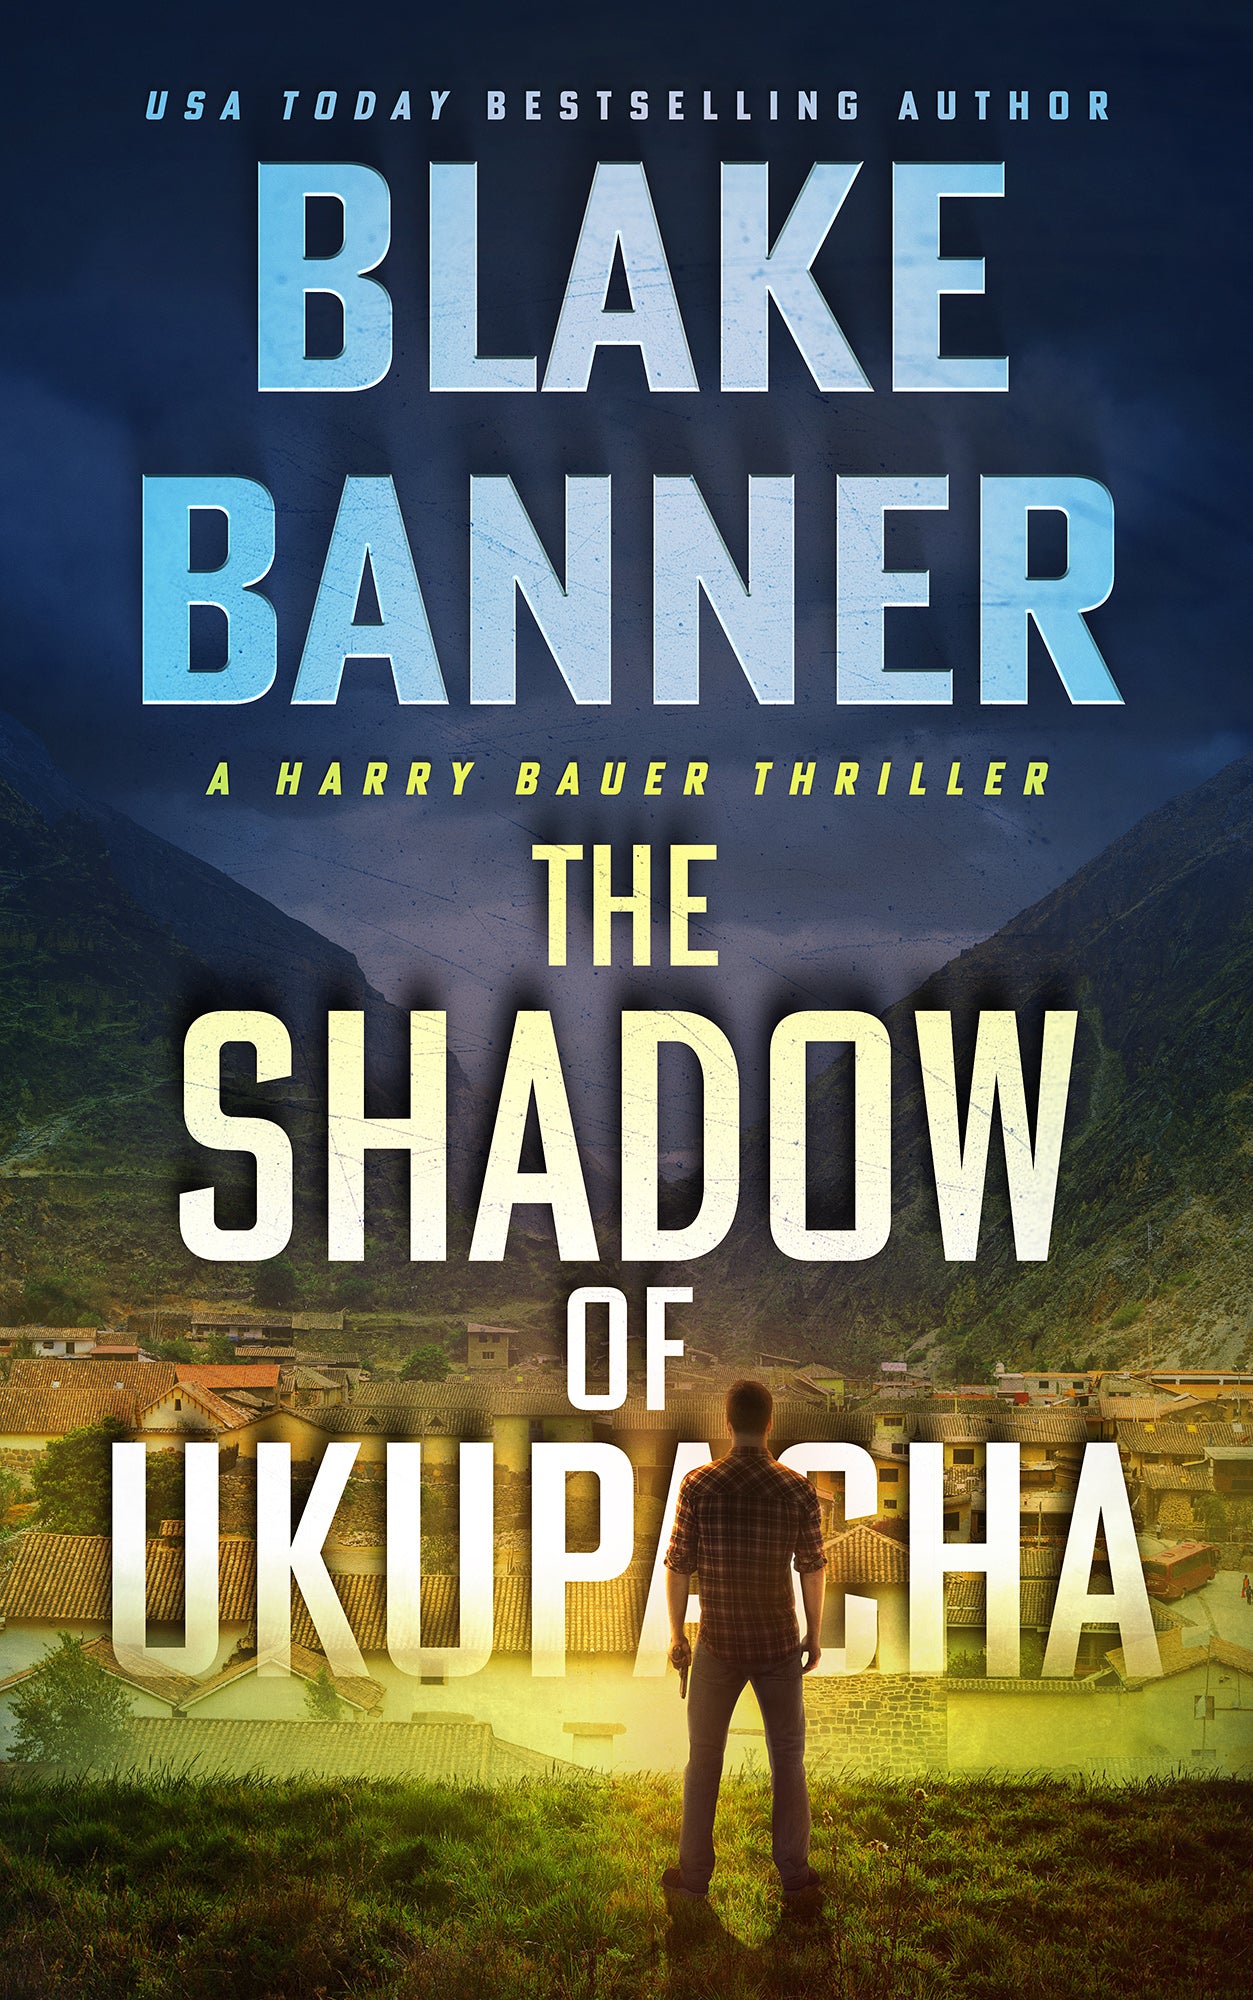 The Shadow of Ukupacha